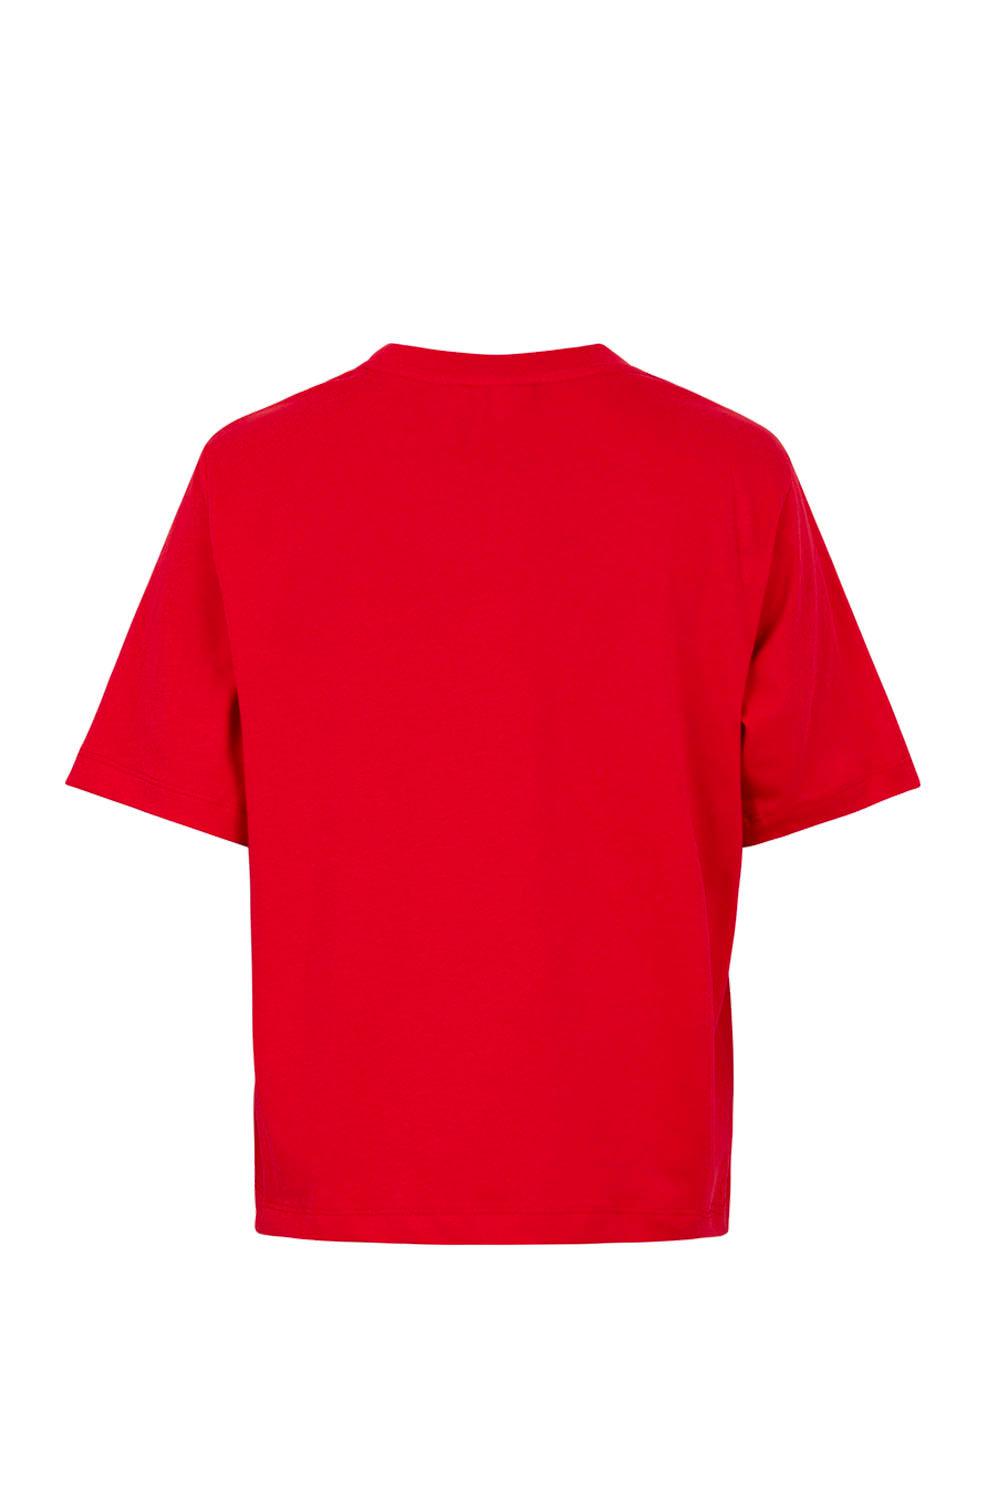 Paris T-shirt Racing Red